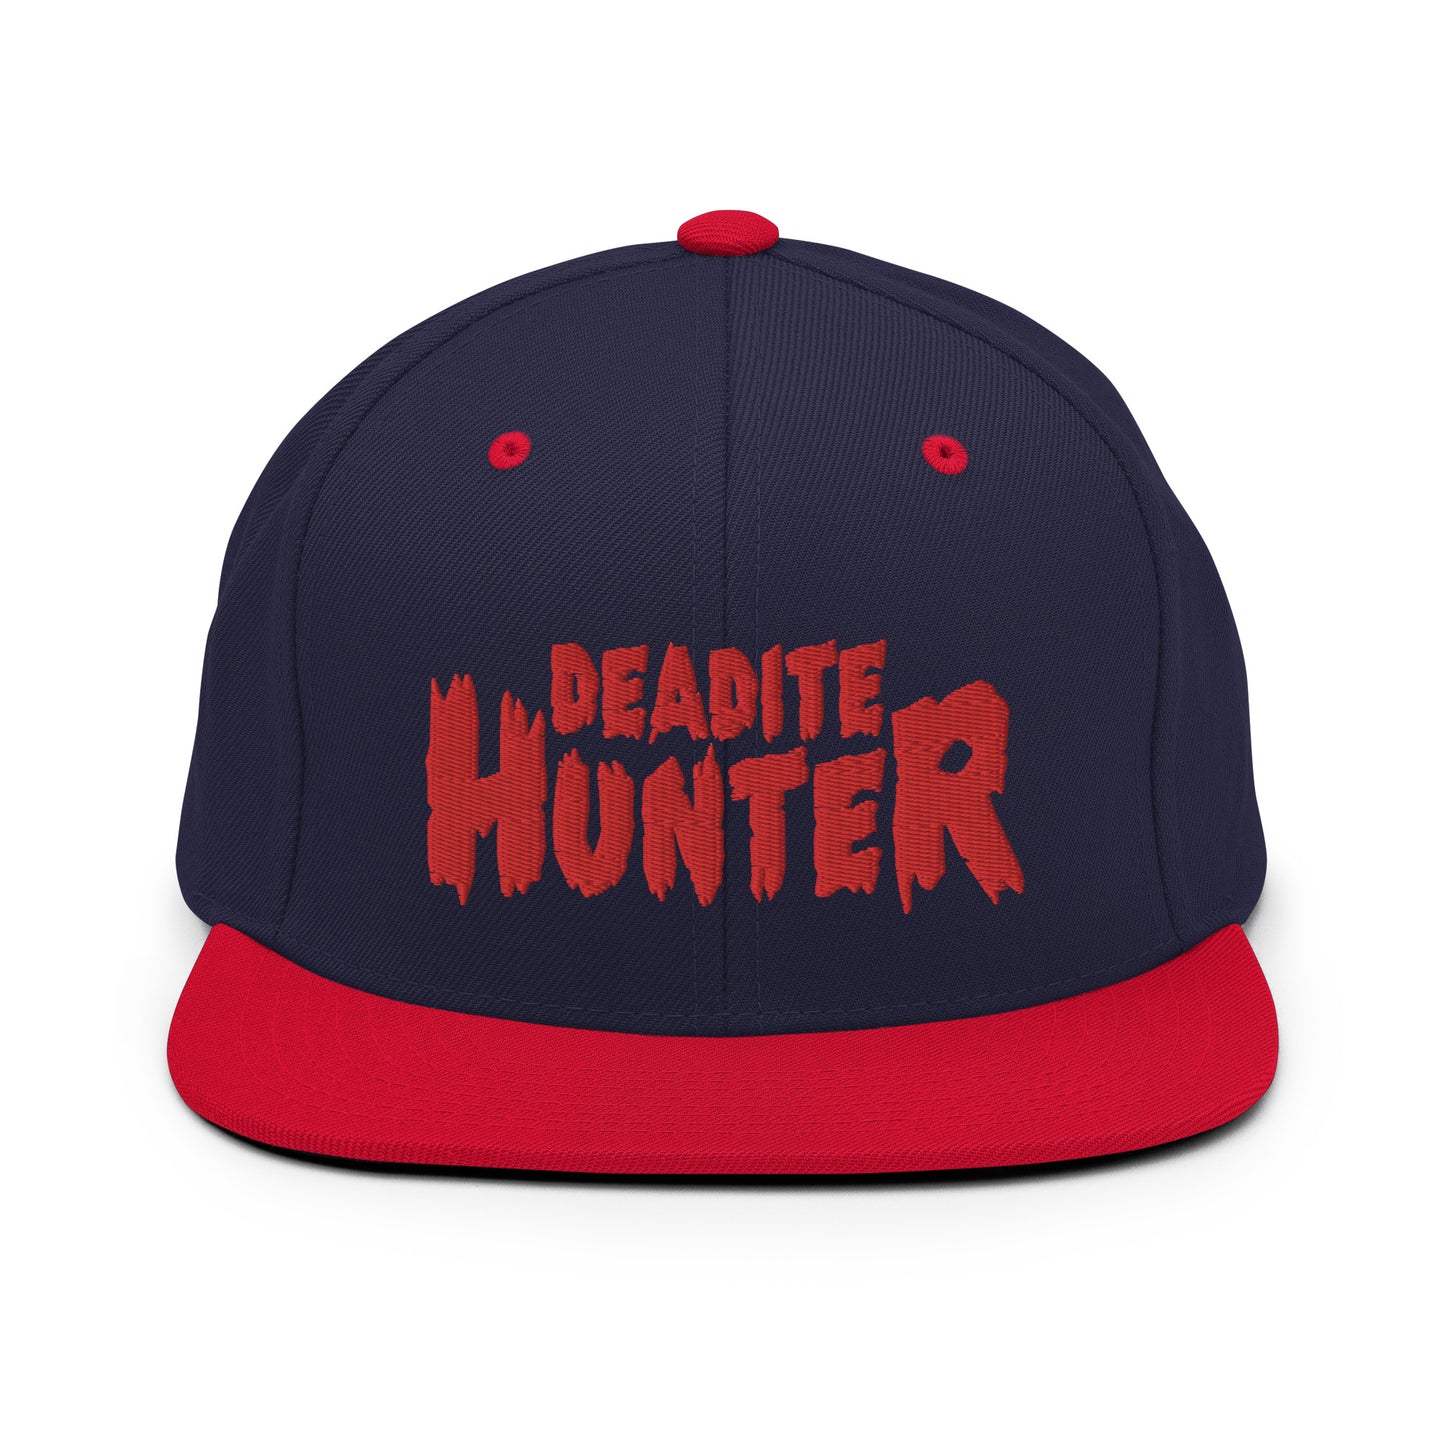 Deadite Hunter snapback hat